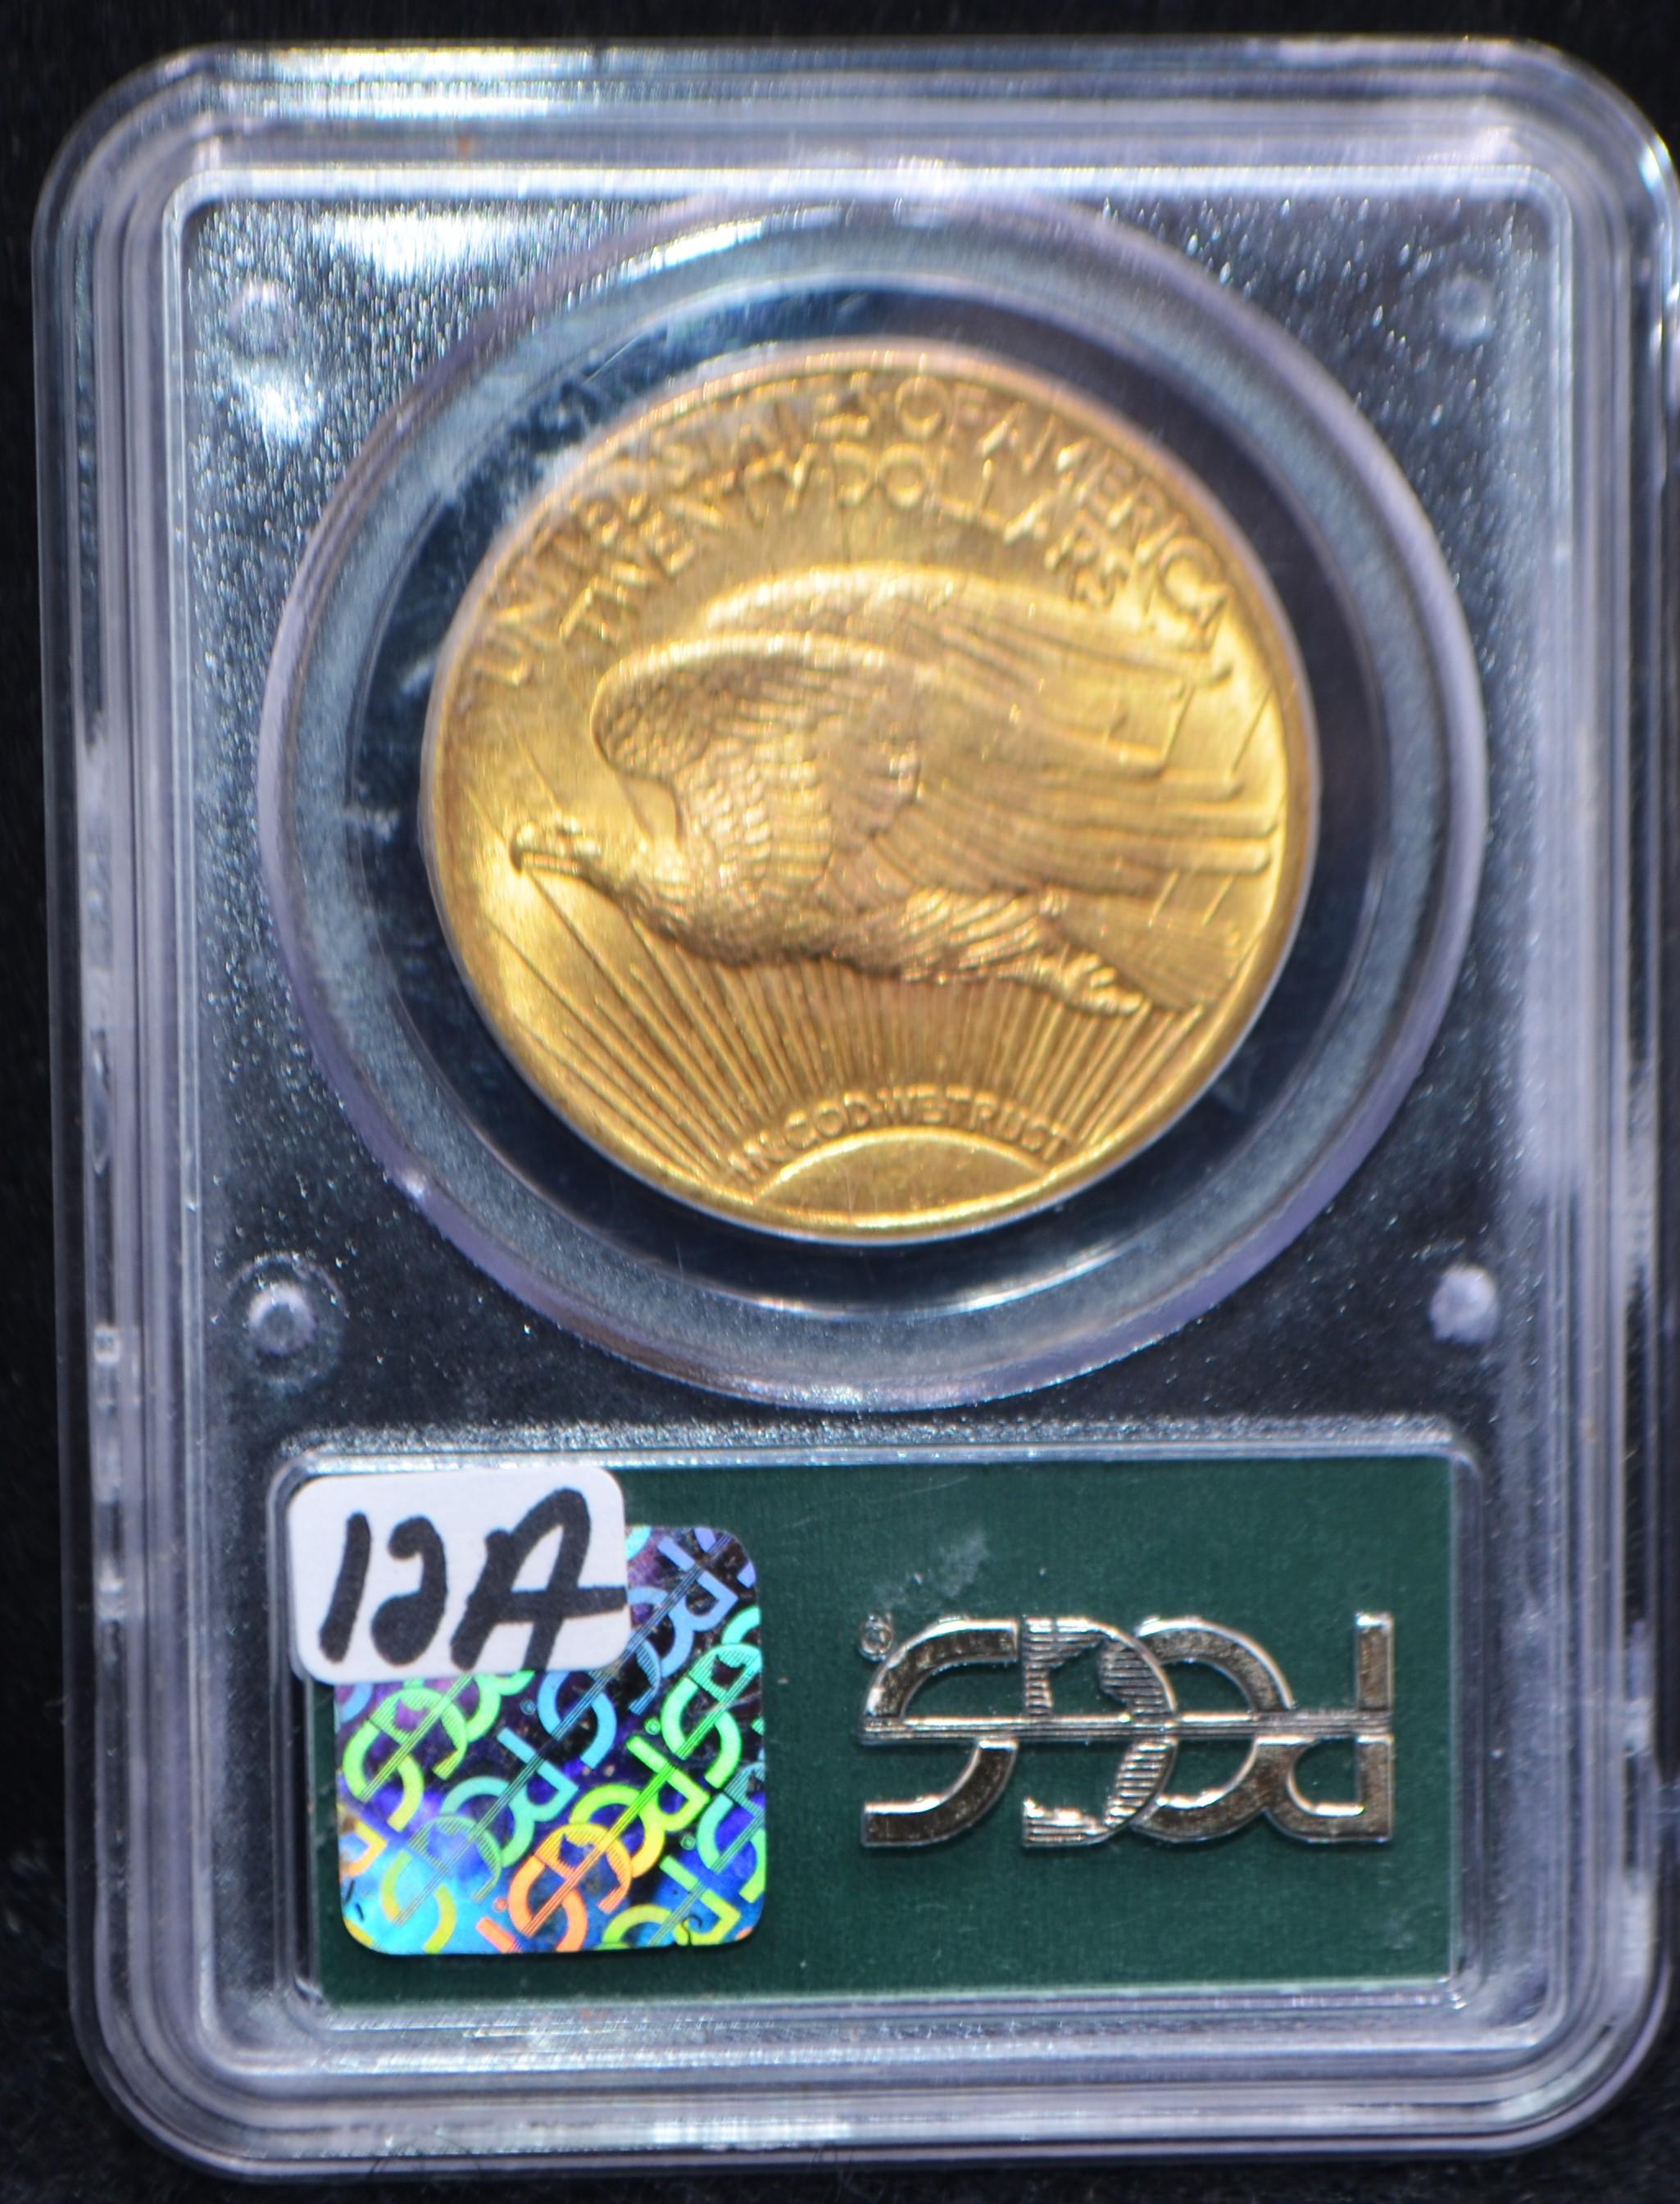 RARE 1924 $20 SAINT GAUDENS GOLD COIN - PCGS MS62